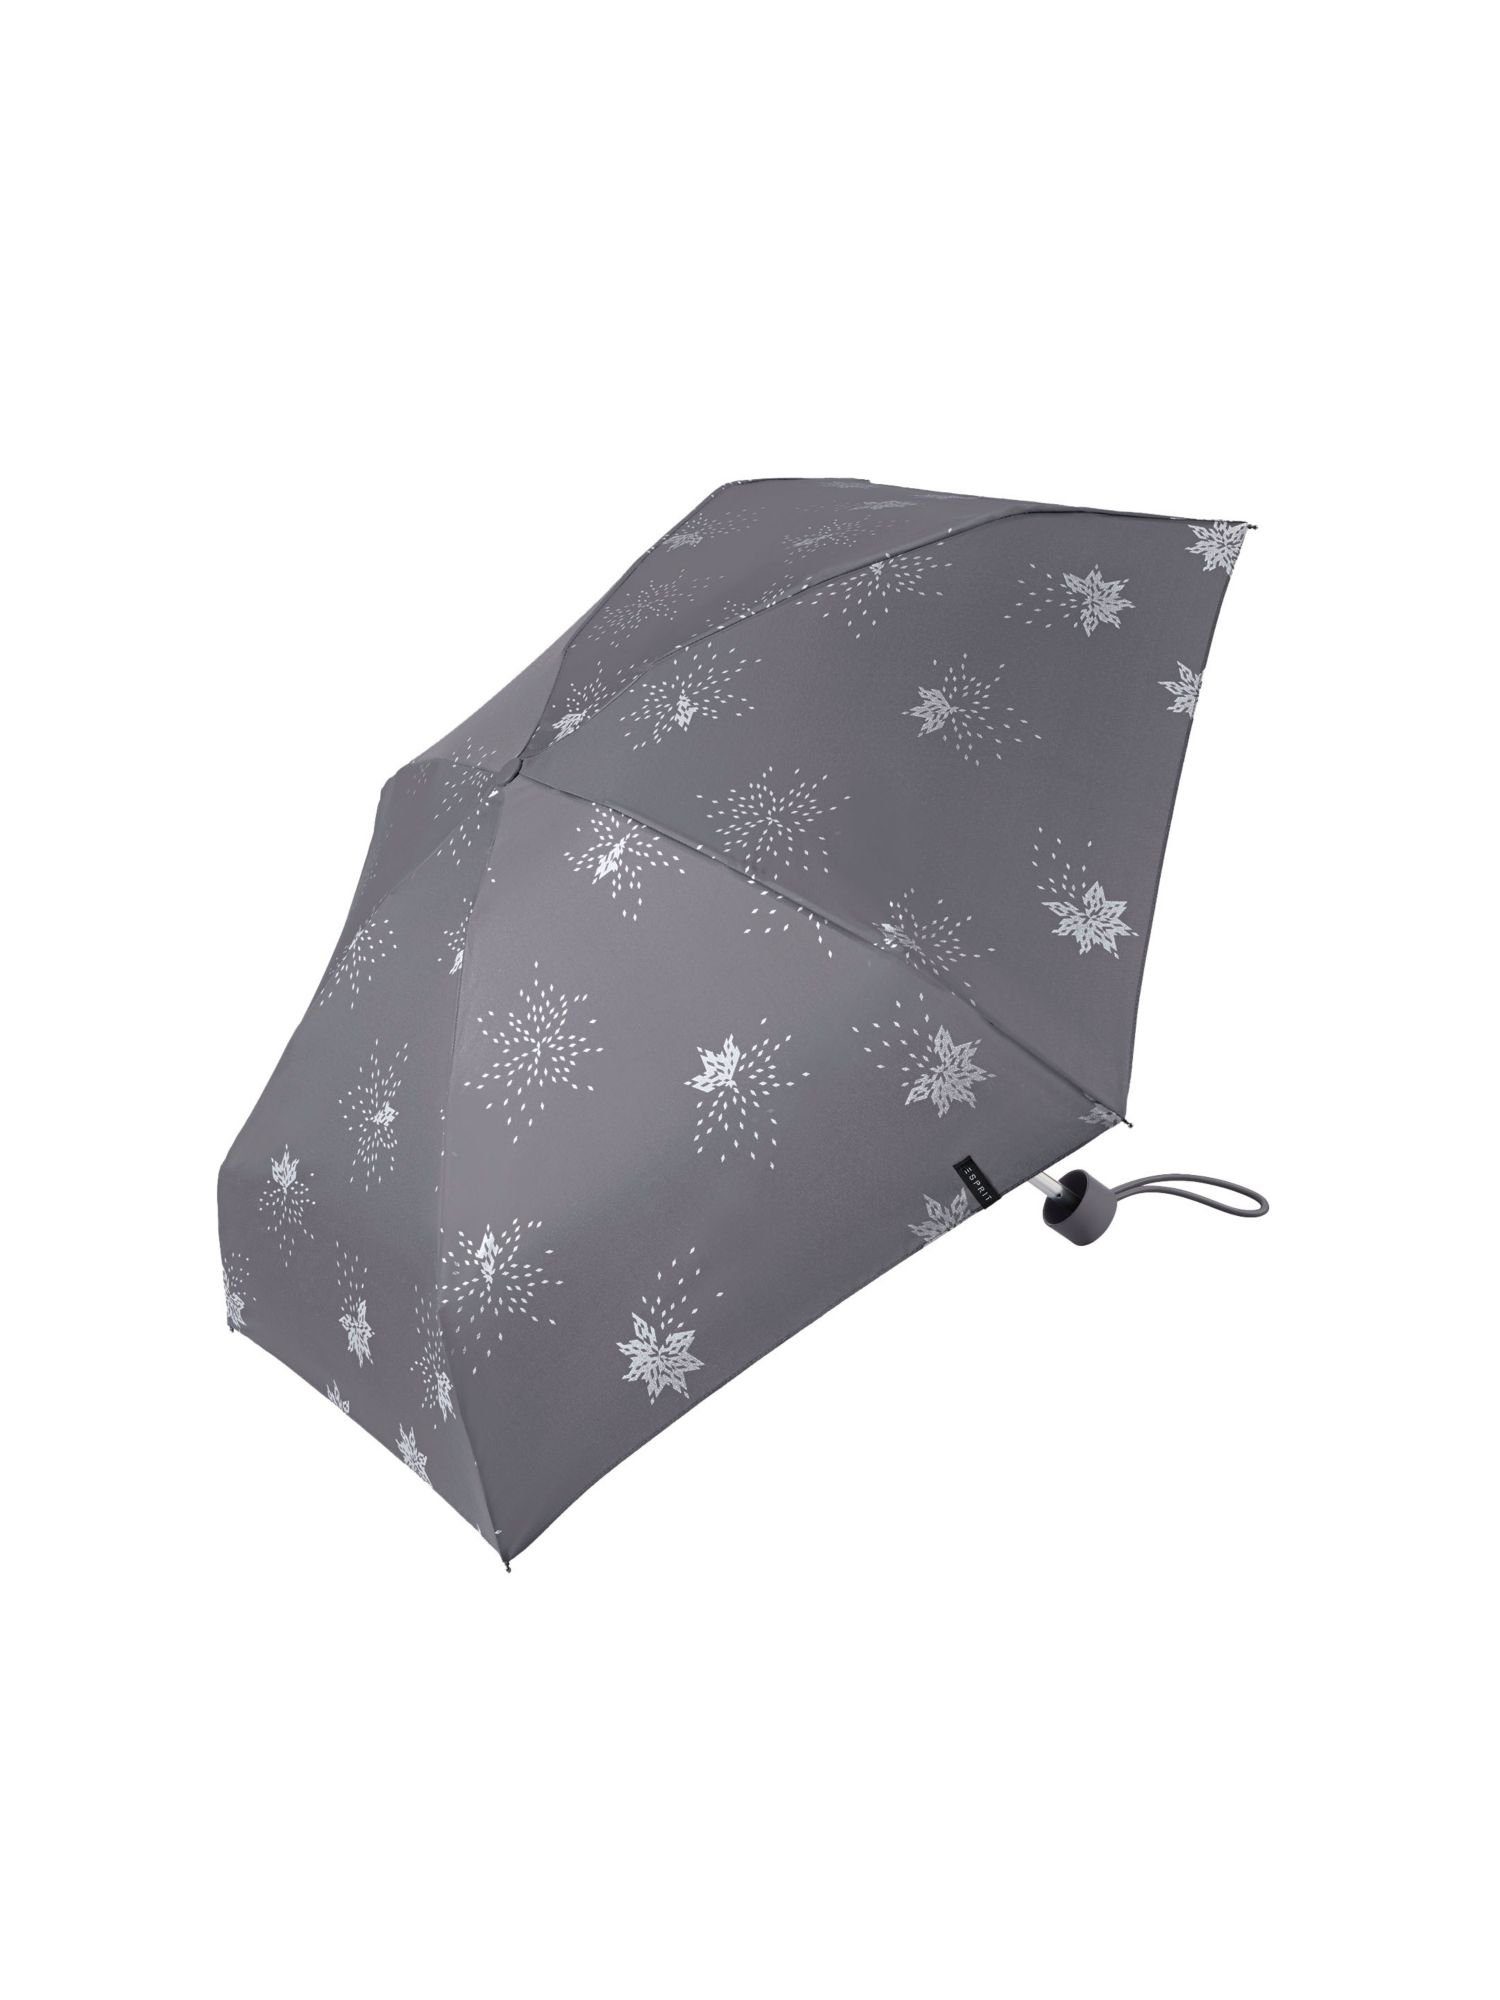 Pocket Esprit umbrella Taschenregenschirm